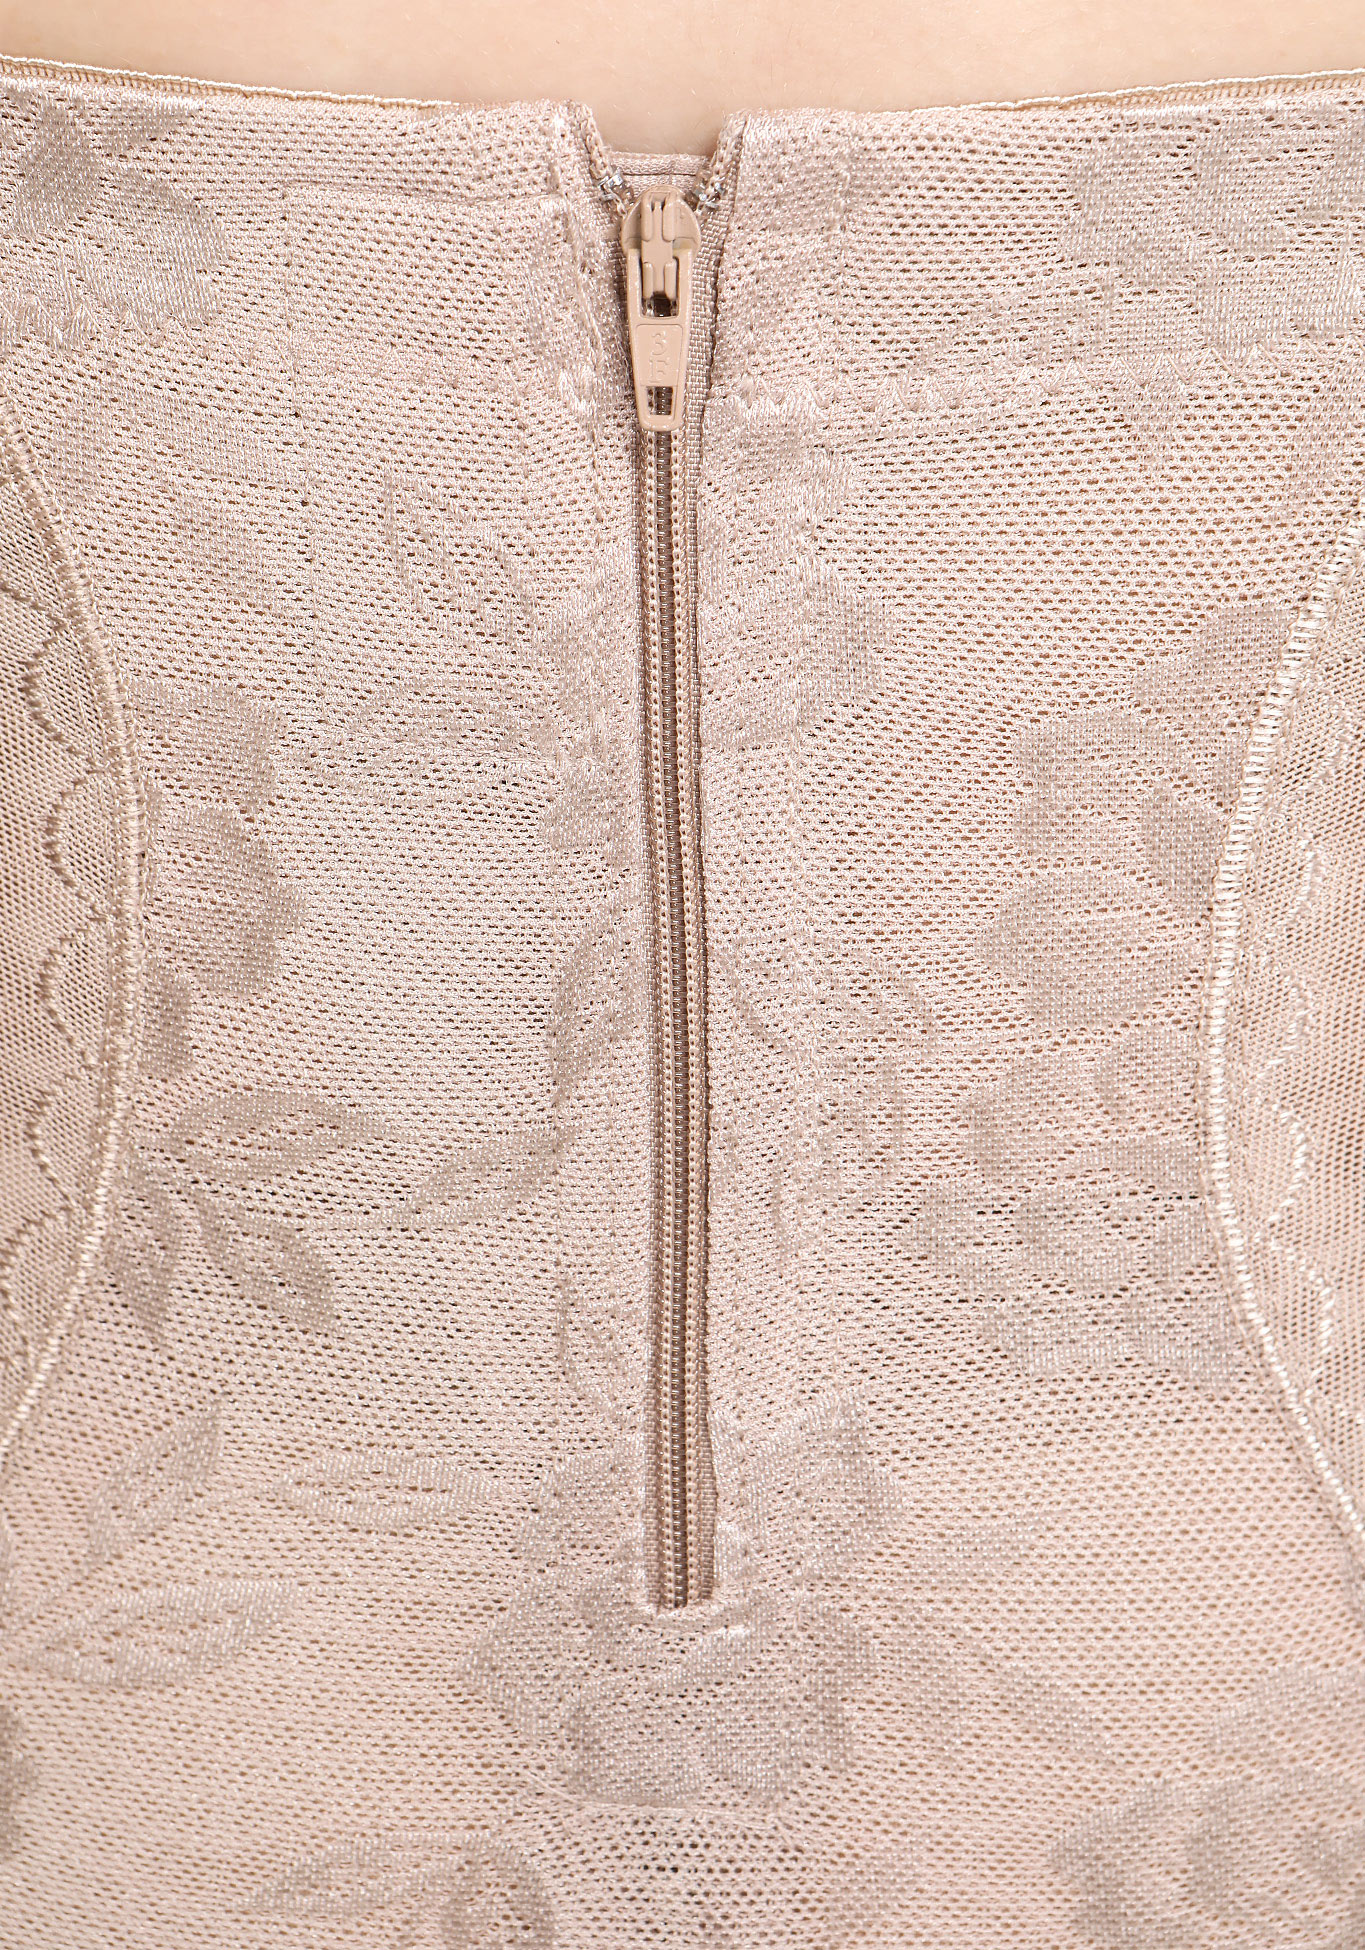 Корсет - трусы на молнии "Медея" Burlesco, цвет бежевый, размер 48-50 - фото 3